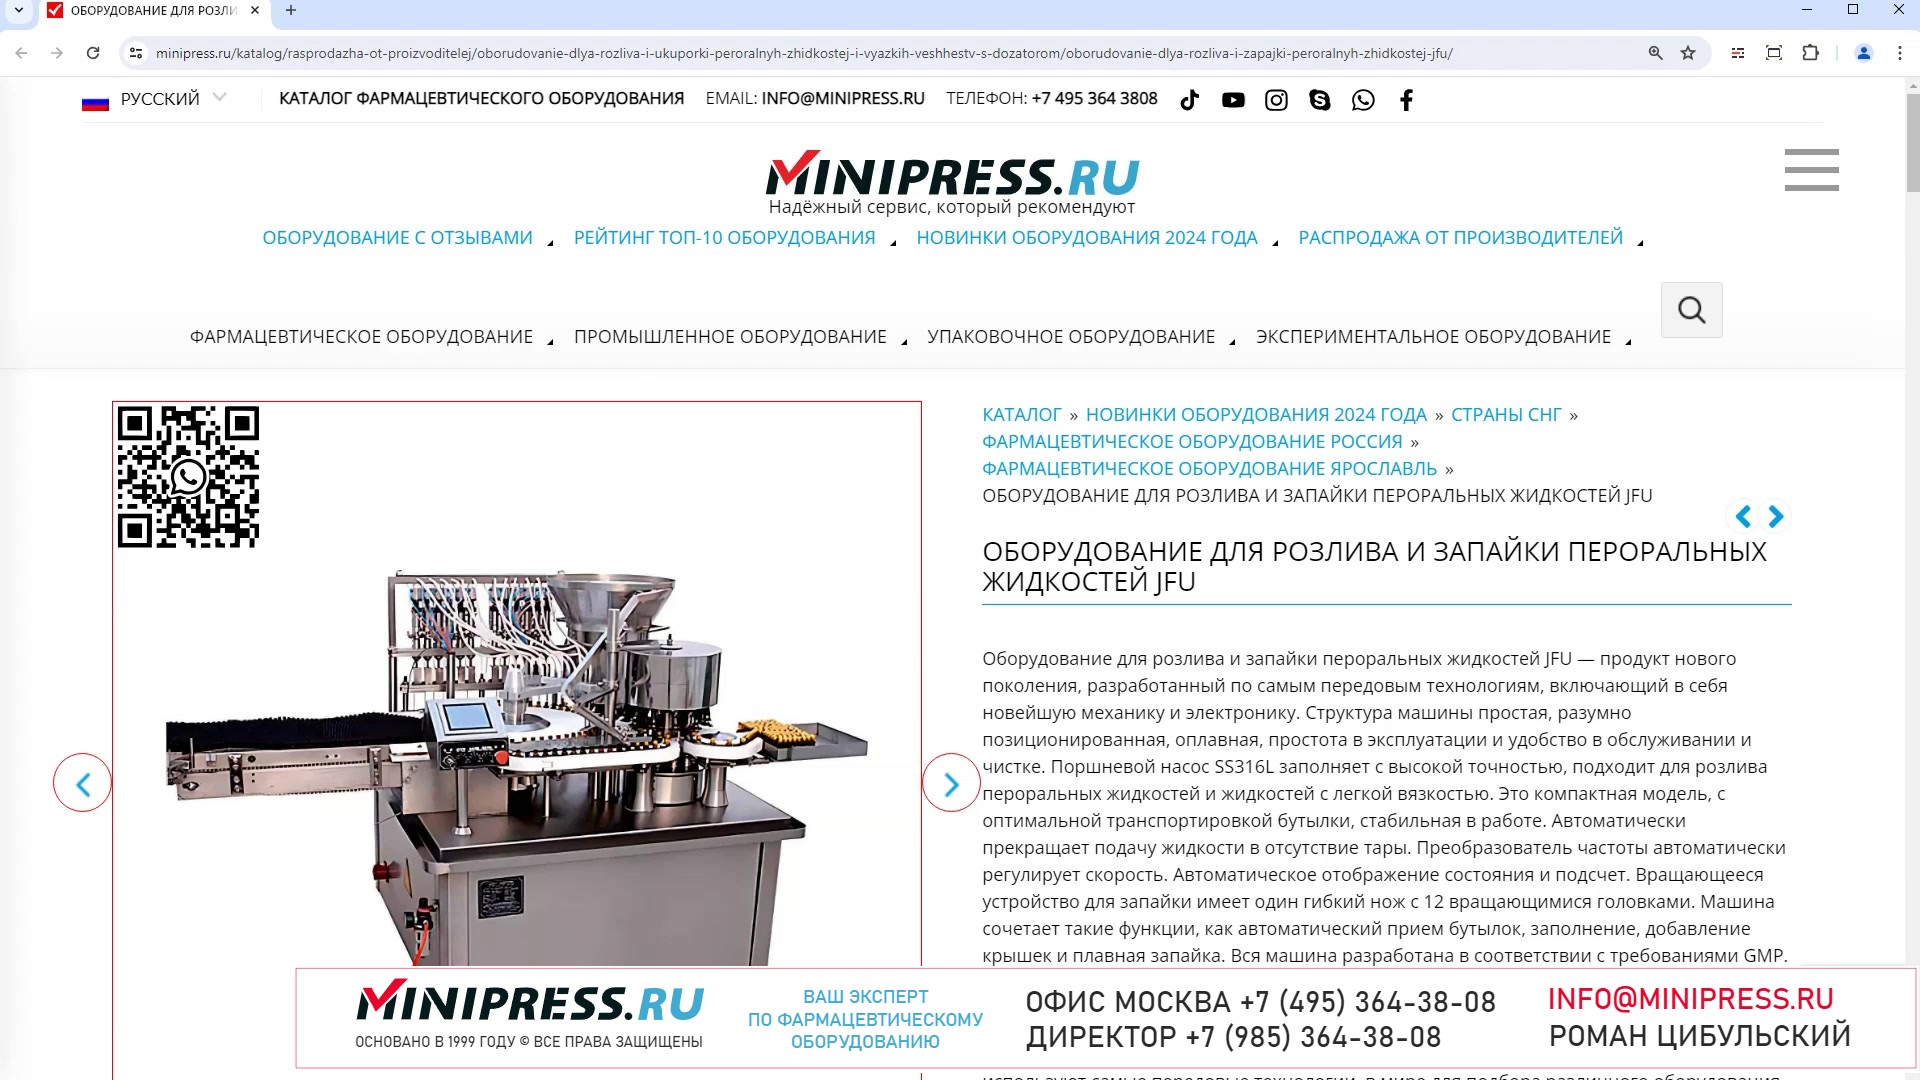 Minipress.ru Оборудование для розлива и запайки пероральных жидкостей JFU